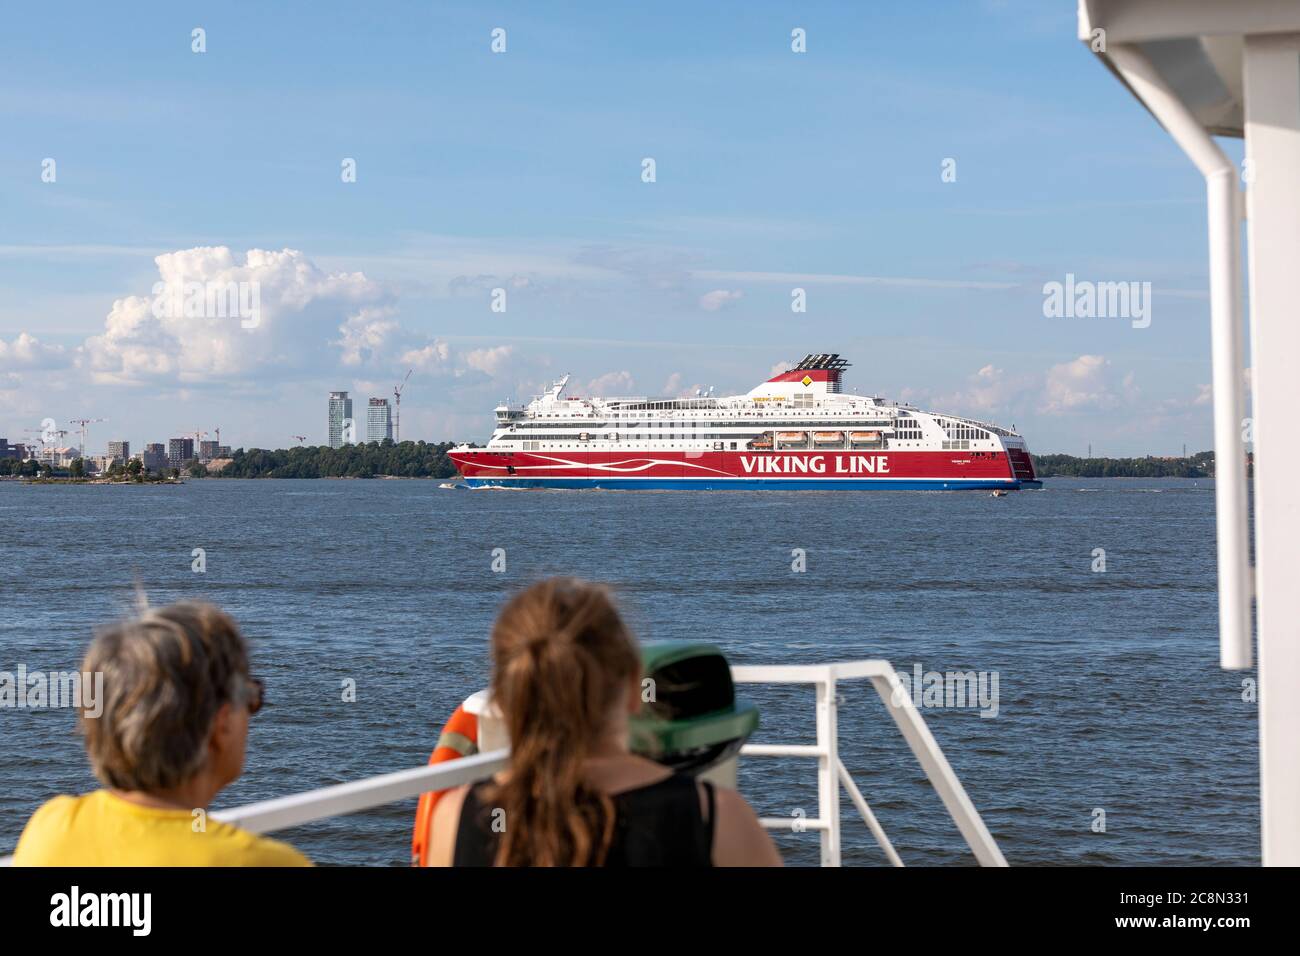 Helsinki ist von drei Seiten von der Ostsee umgeben. Daher hat die Stadt viele Häfen und mehrere Kreuzfahrtschiffe besuchen die finnische Hauptstadt regelmäßig. Stockfoto